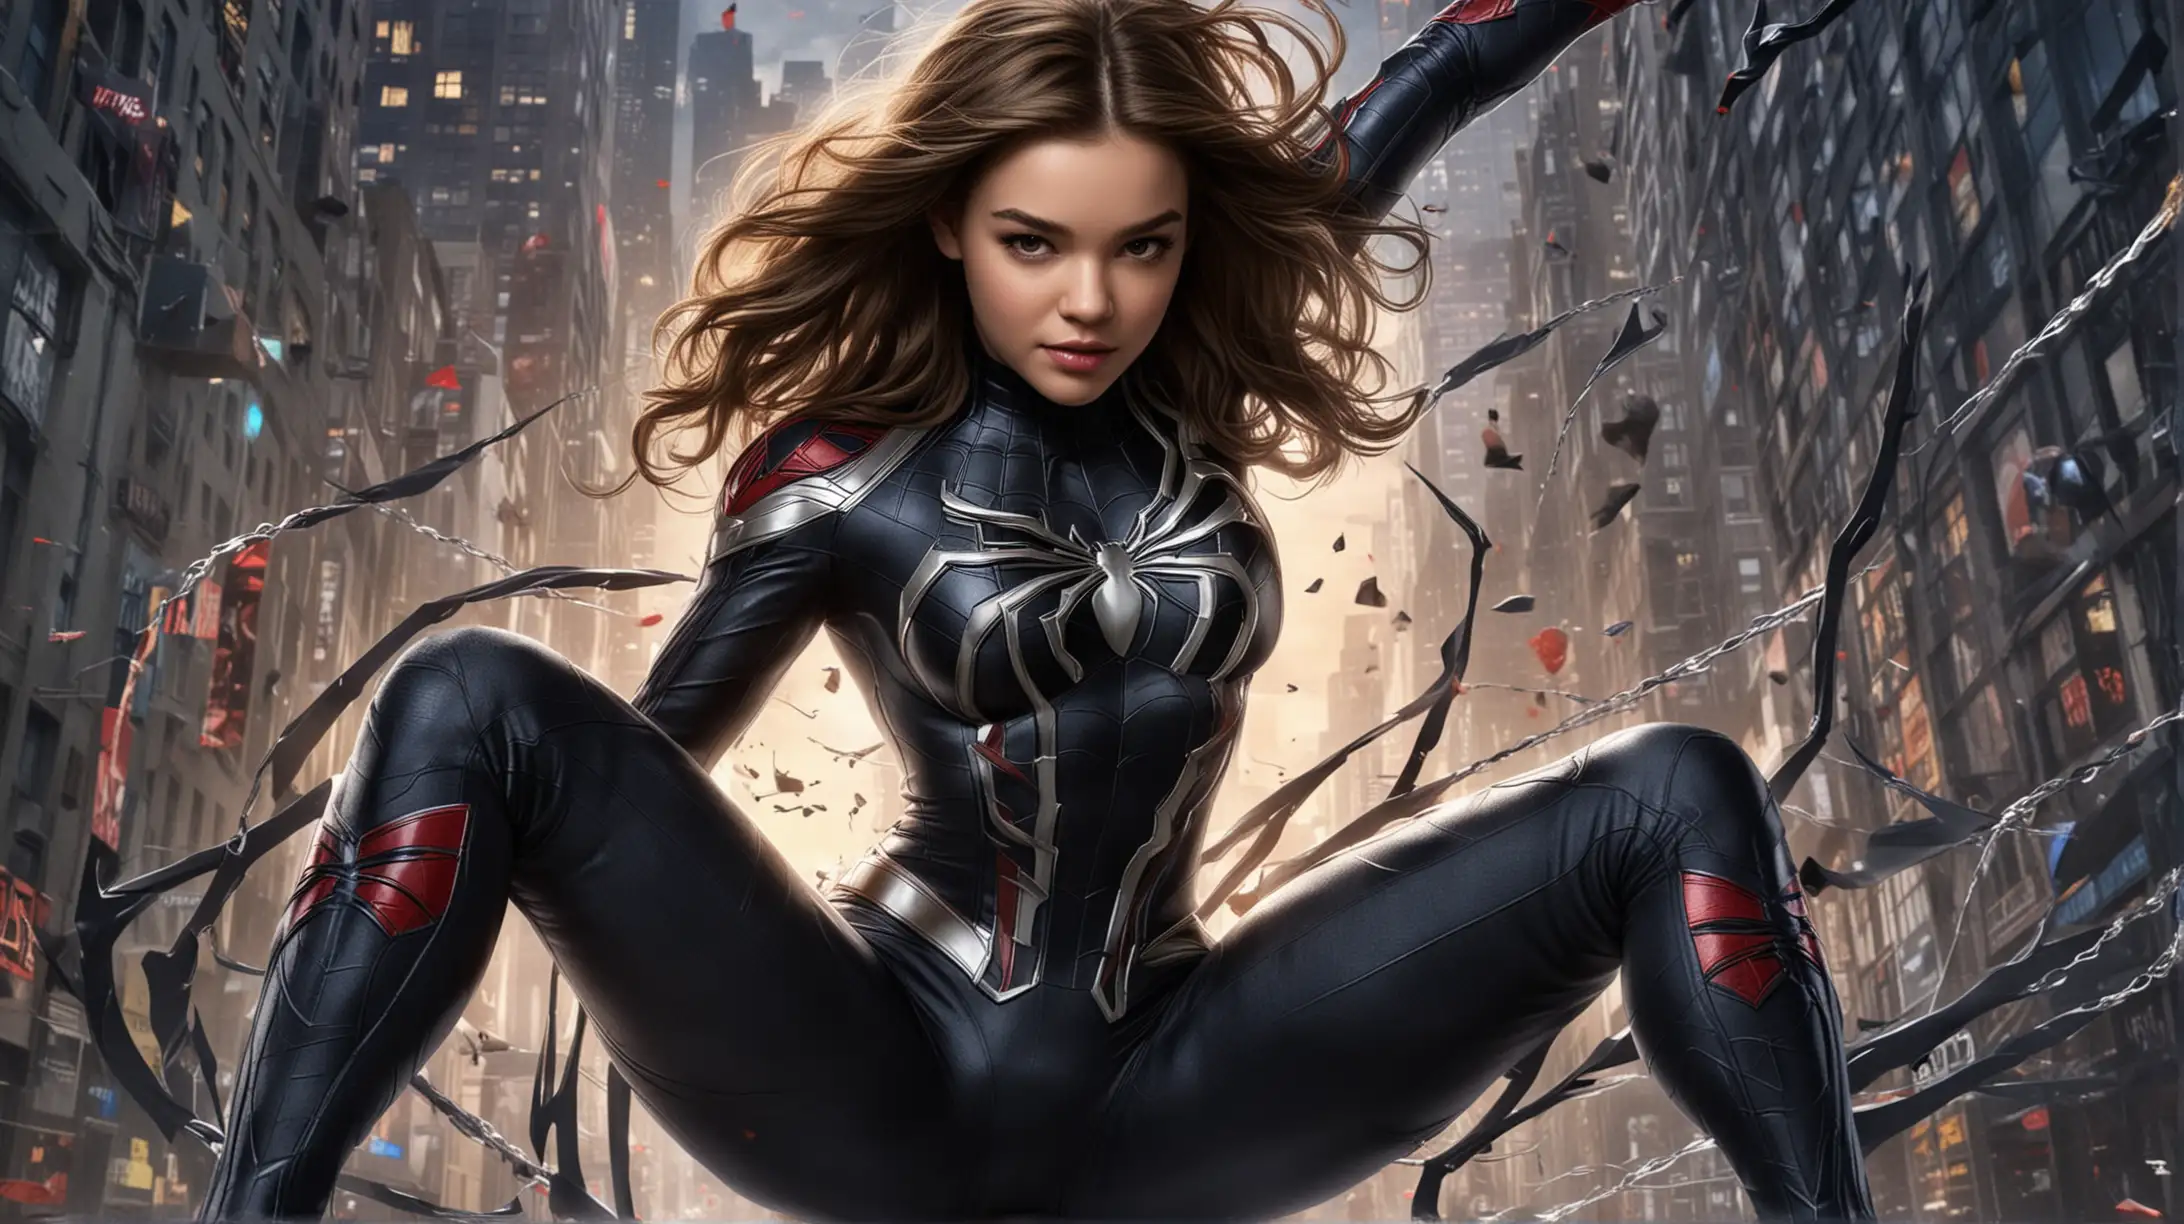 Marvel Poster Hailee Steinfeld as SpiderGirl Battles Vonom in Epic Showdown